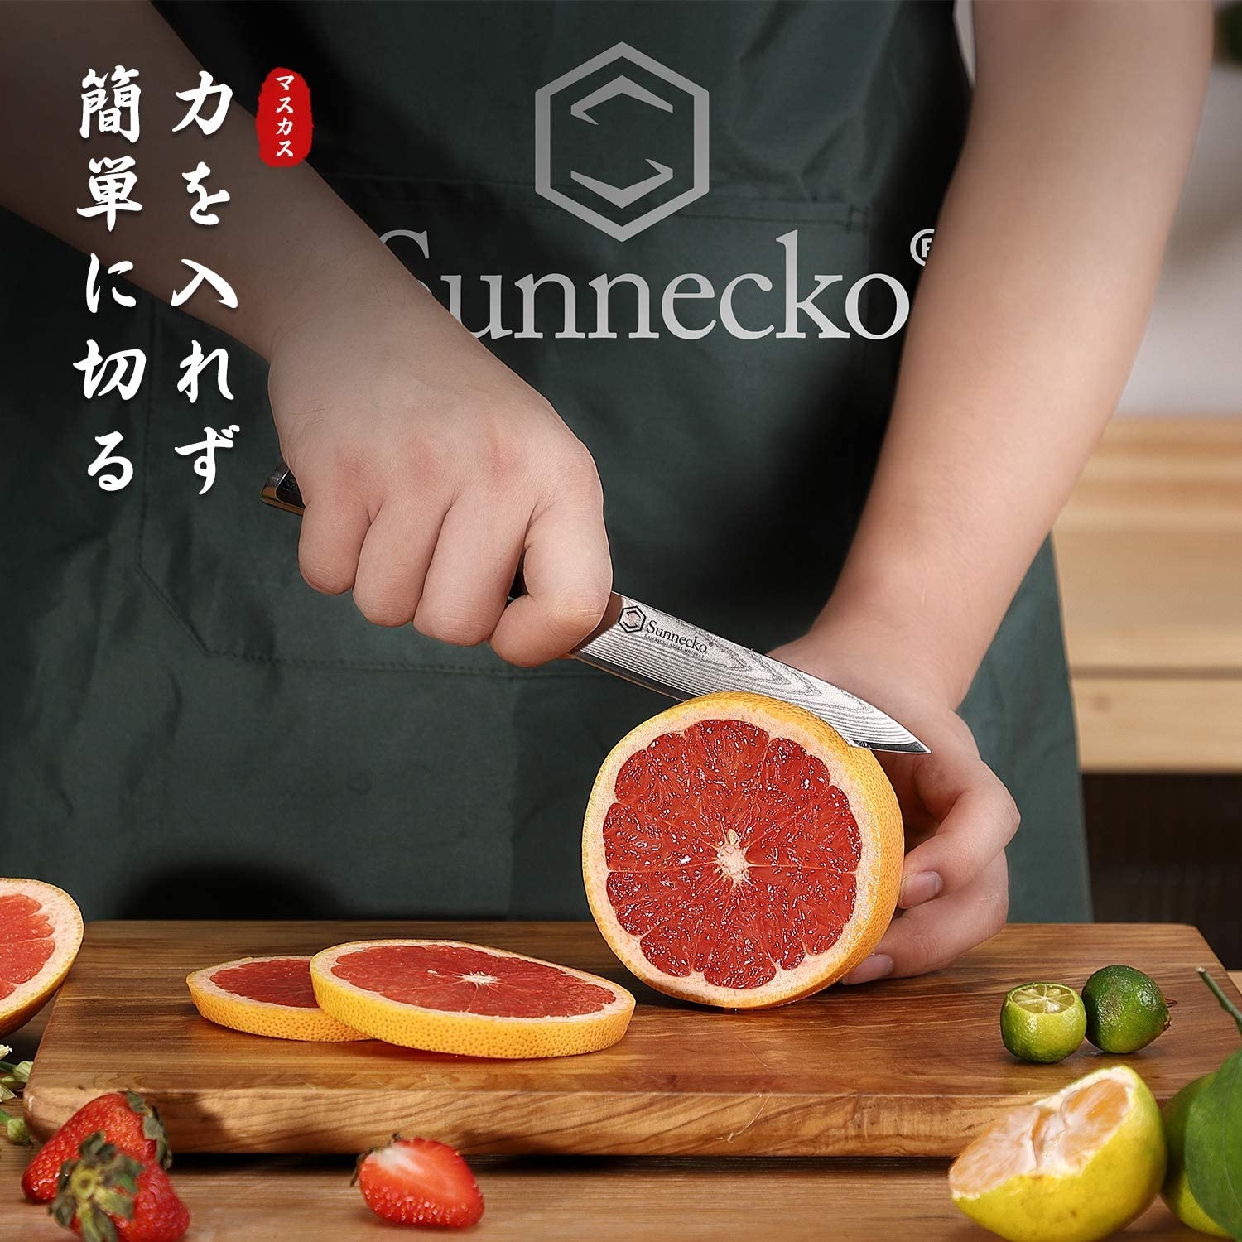 Sunnecko(サンネッコ) ペティナイフの商品画像6 